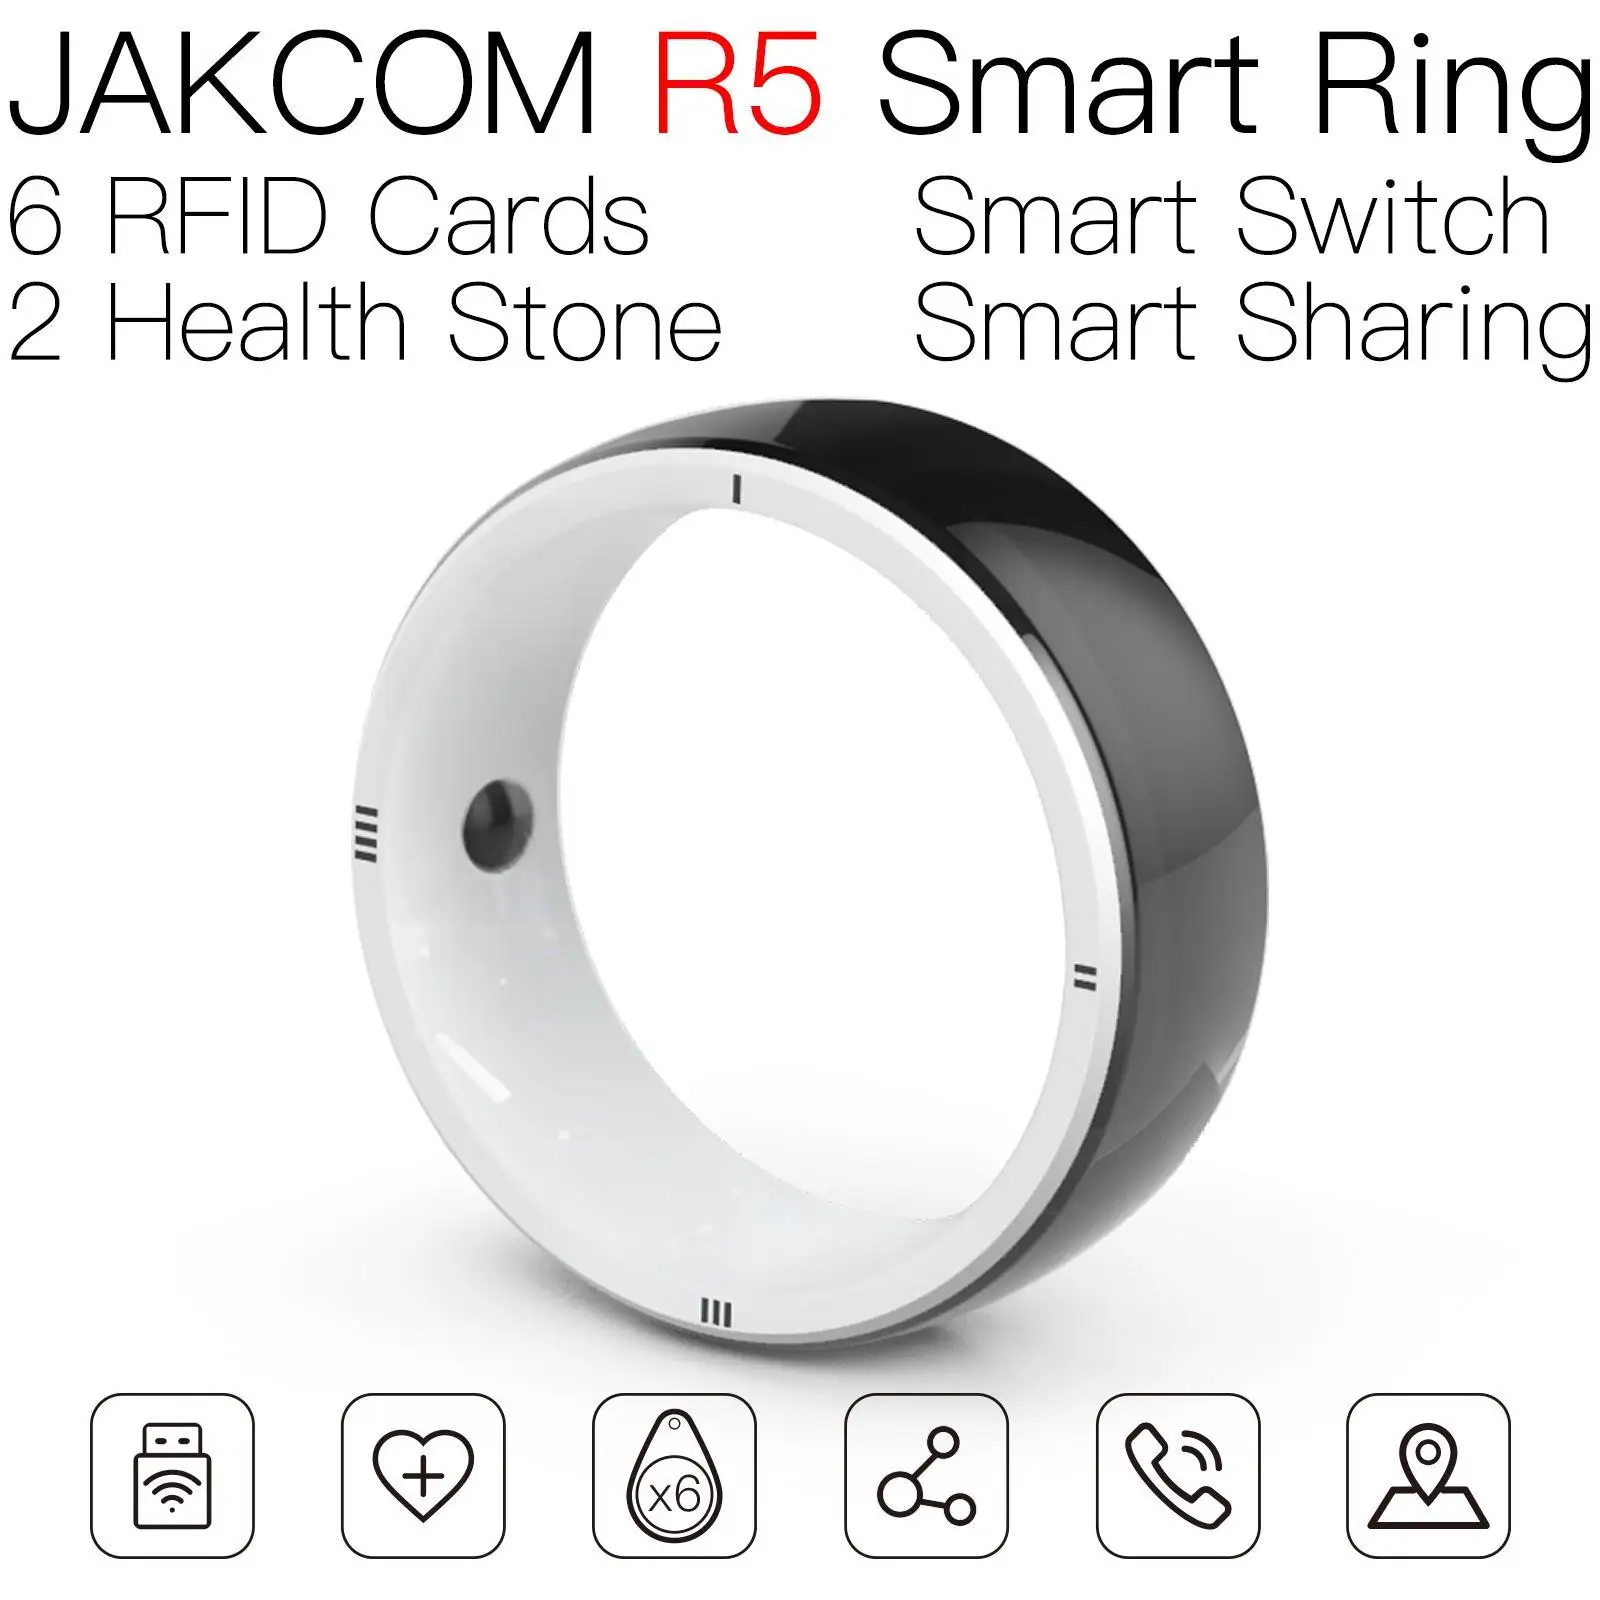 

Смарт-кольцо JAKCOM R5, лучше, чем Кольцо rfid, nfc-метка, МГц, сублимационные карты, чип rfc, новые горизонты, карта laura